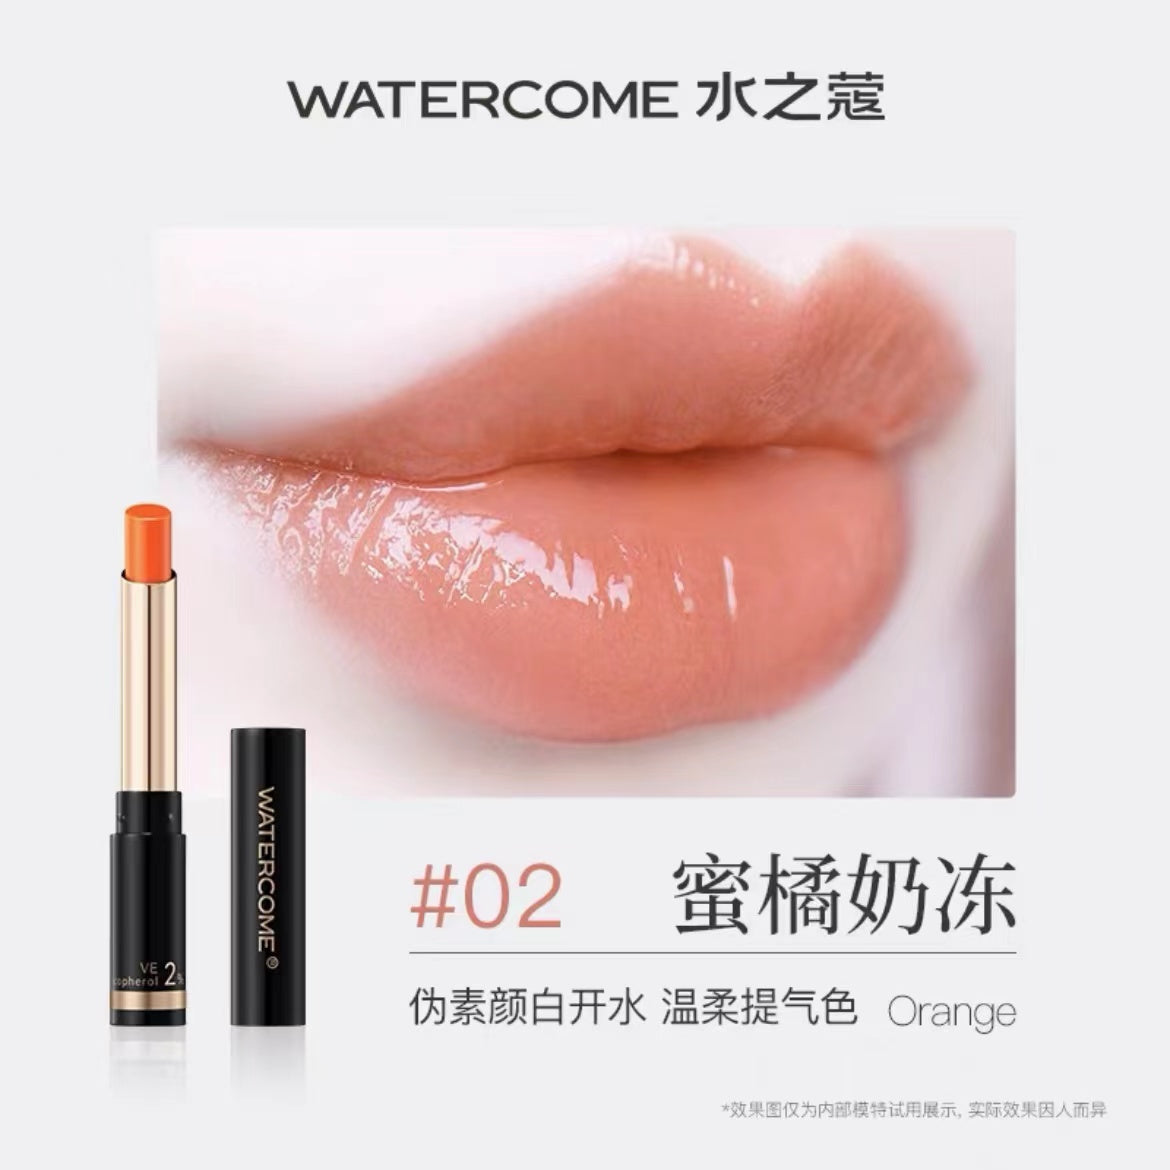 Watercome Colored Lip Balm 1.8g 水之蔻有色润唇膏